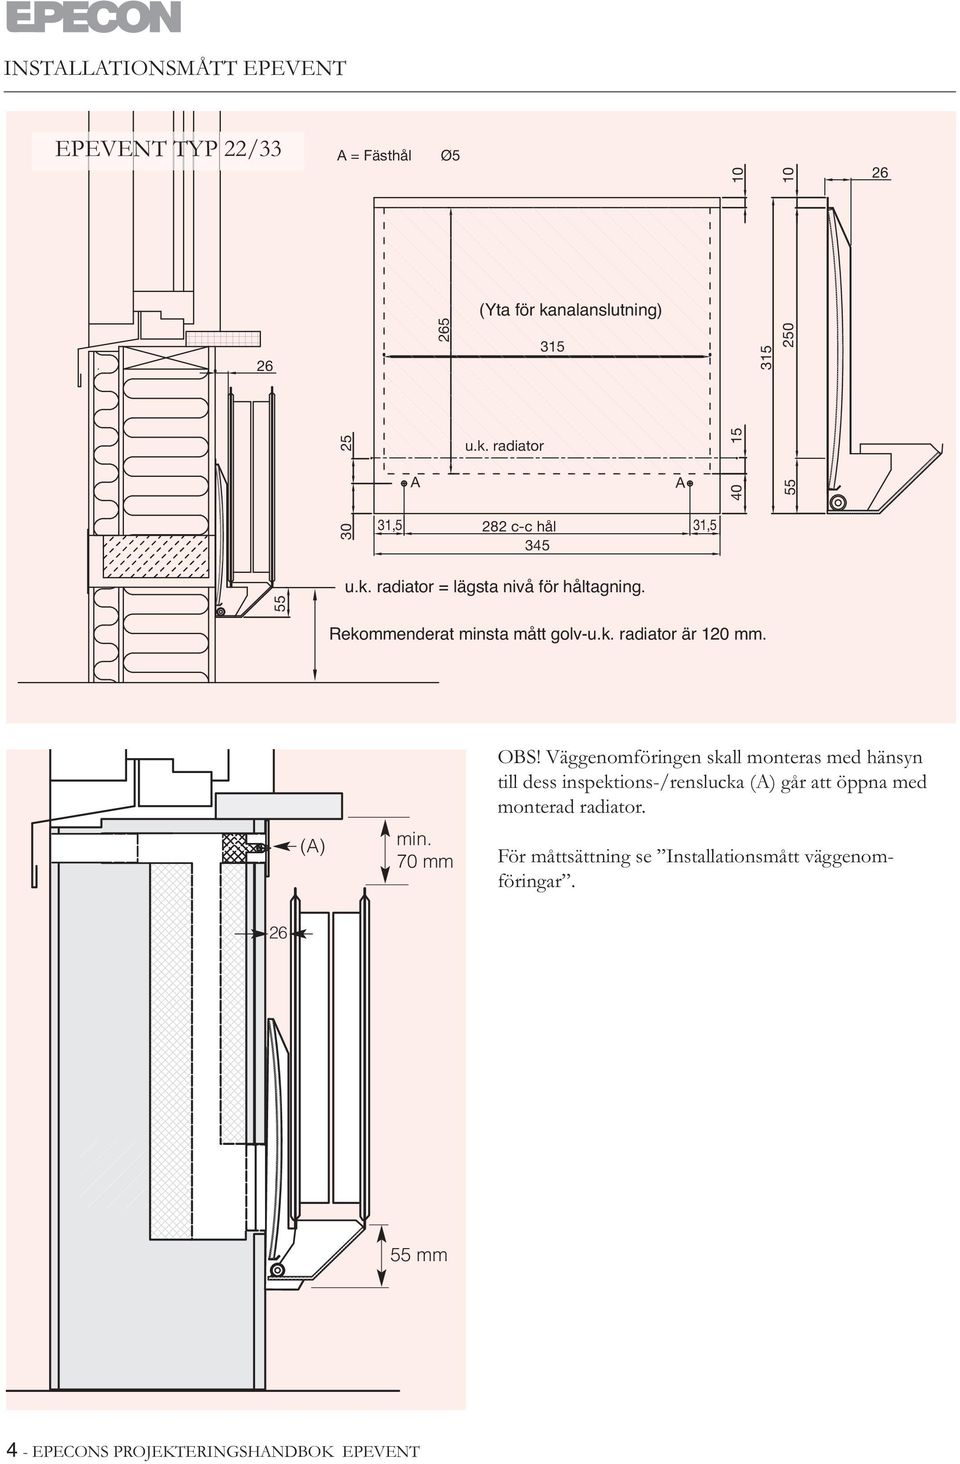 Rekommenderat minsta mått golv-u.k. radiator är 120 mm. () min. 70 mm OBS!